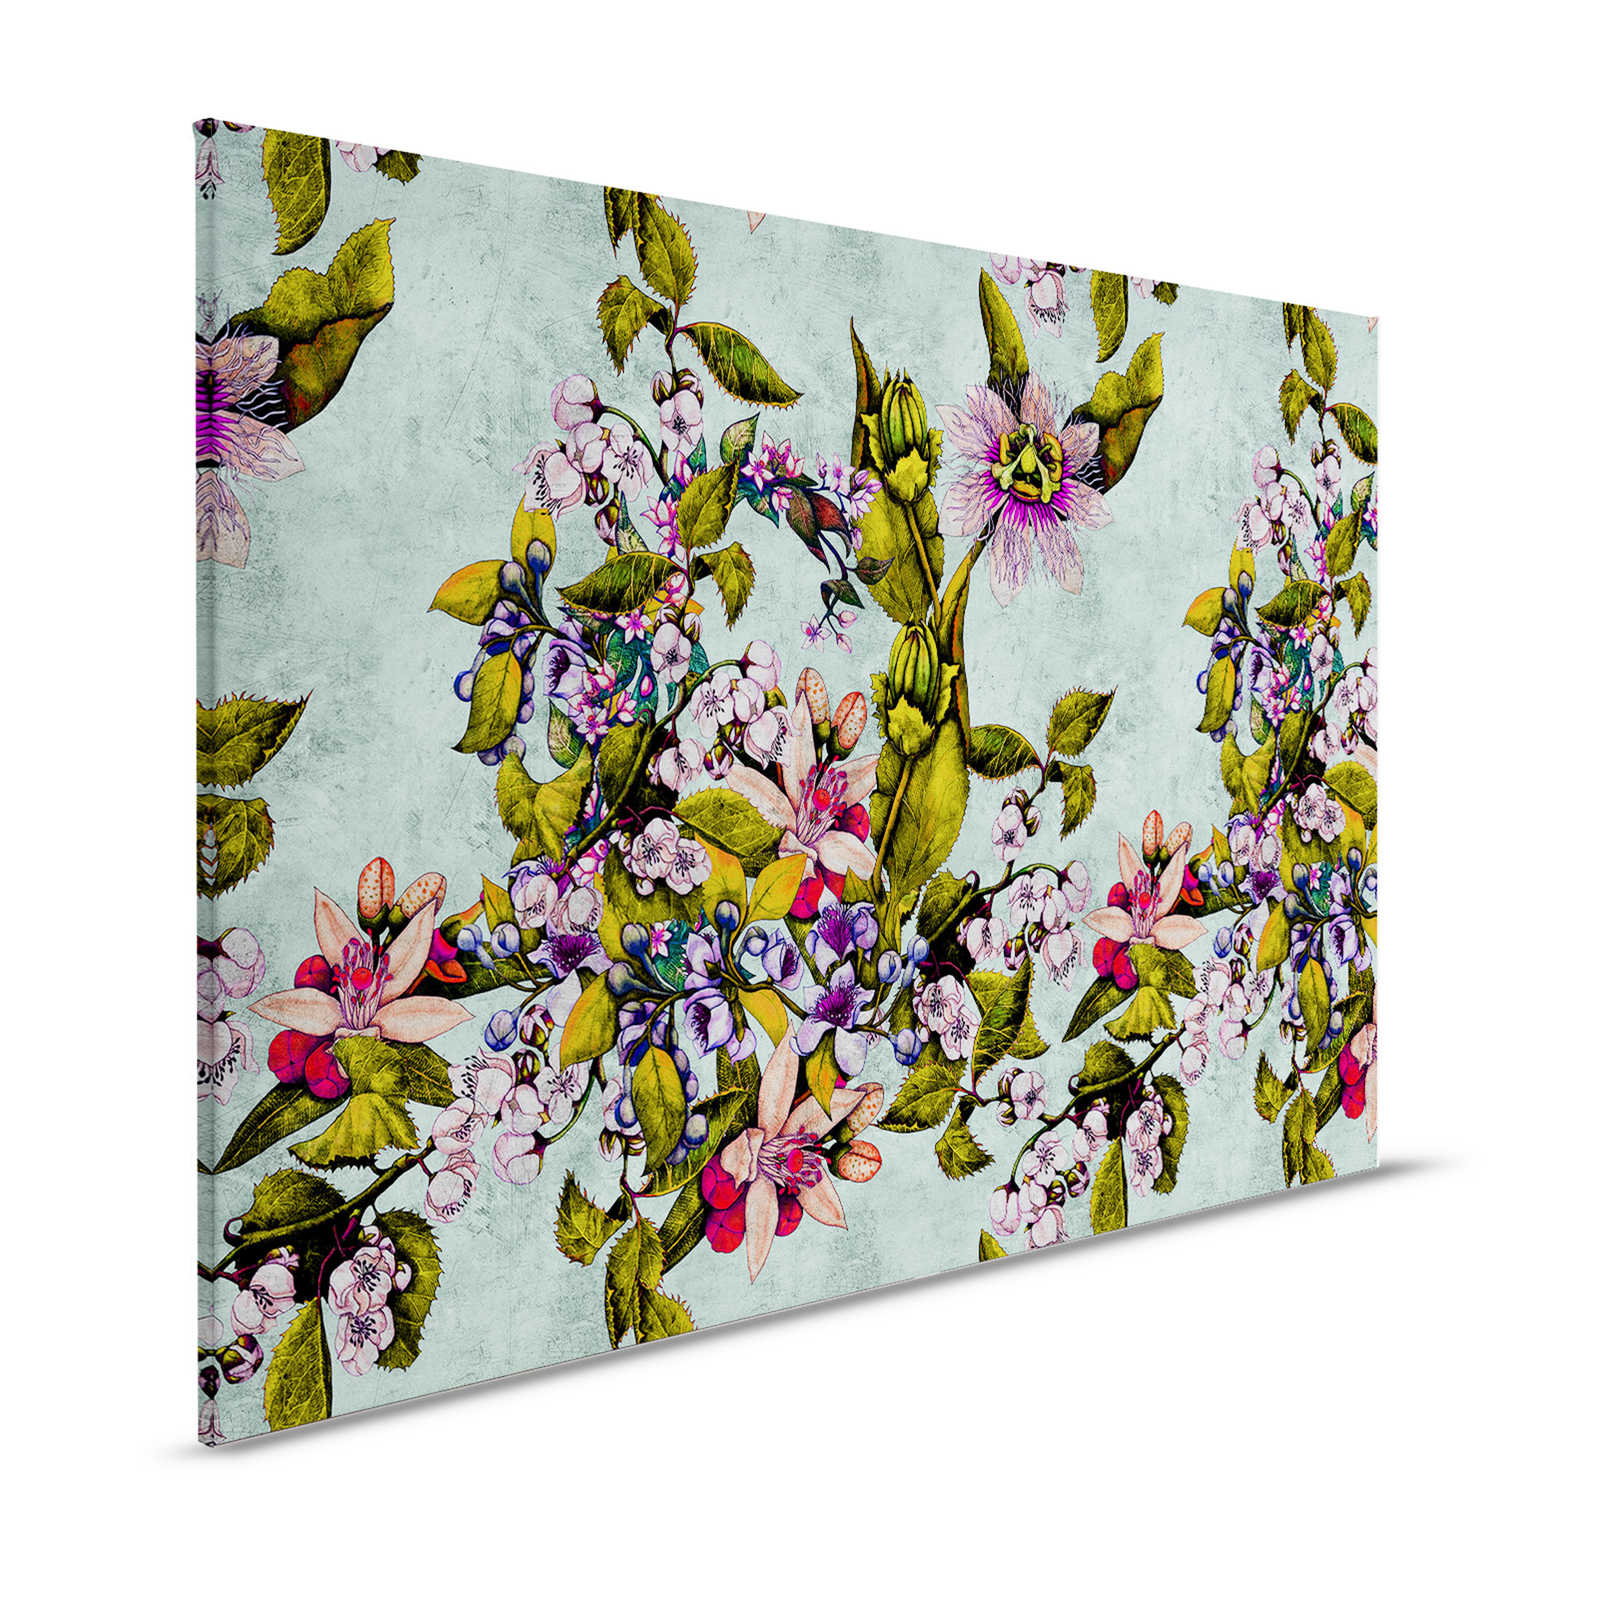 Tropical Passion 2 - Toile avec fleurs et bourgeons - 1,20 m x 0,80 m
